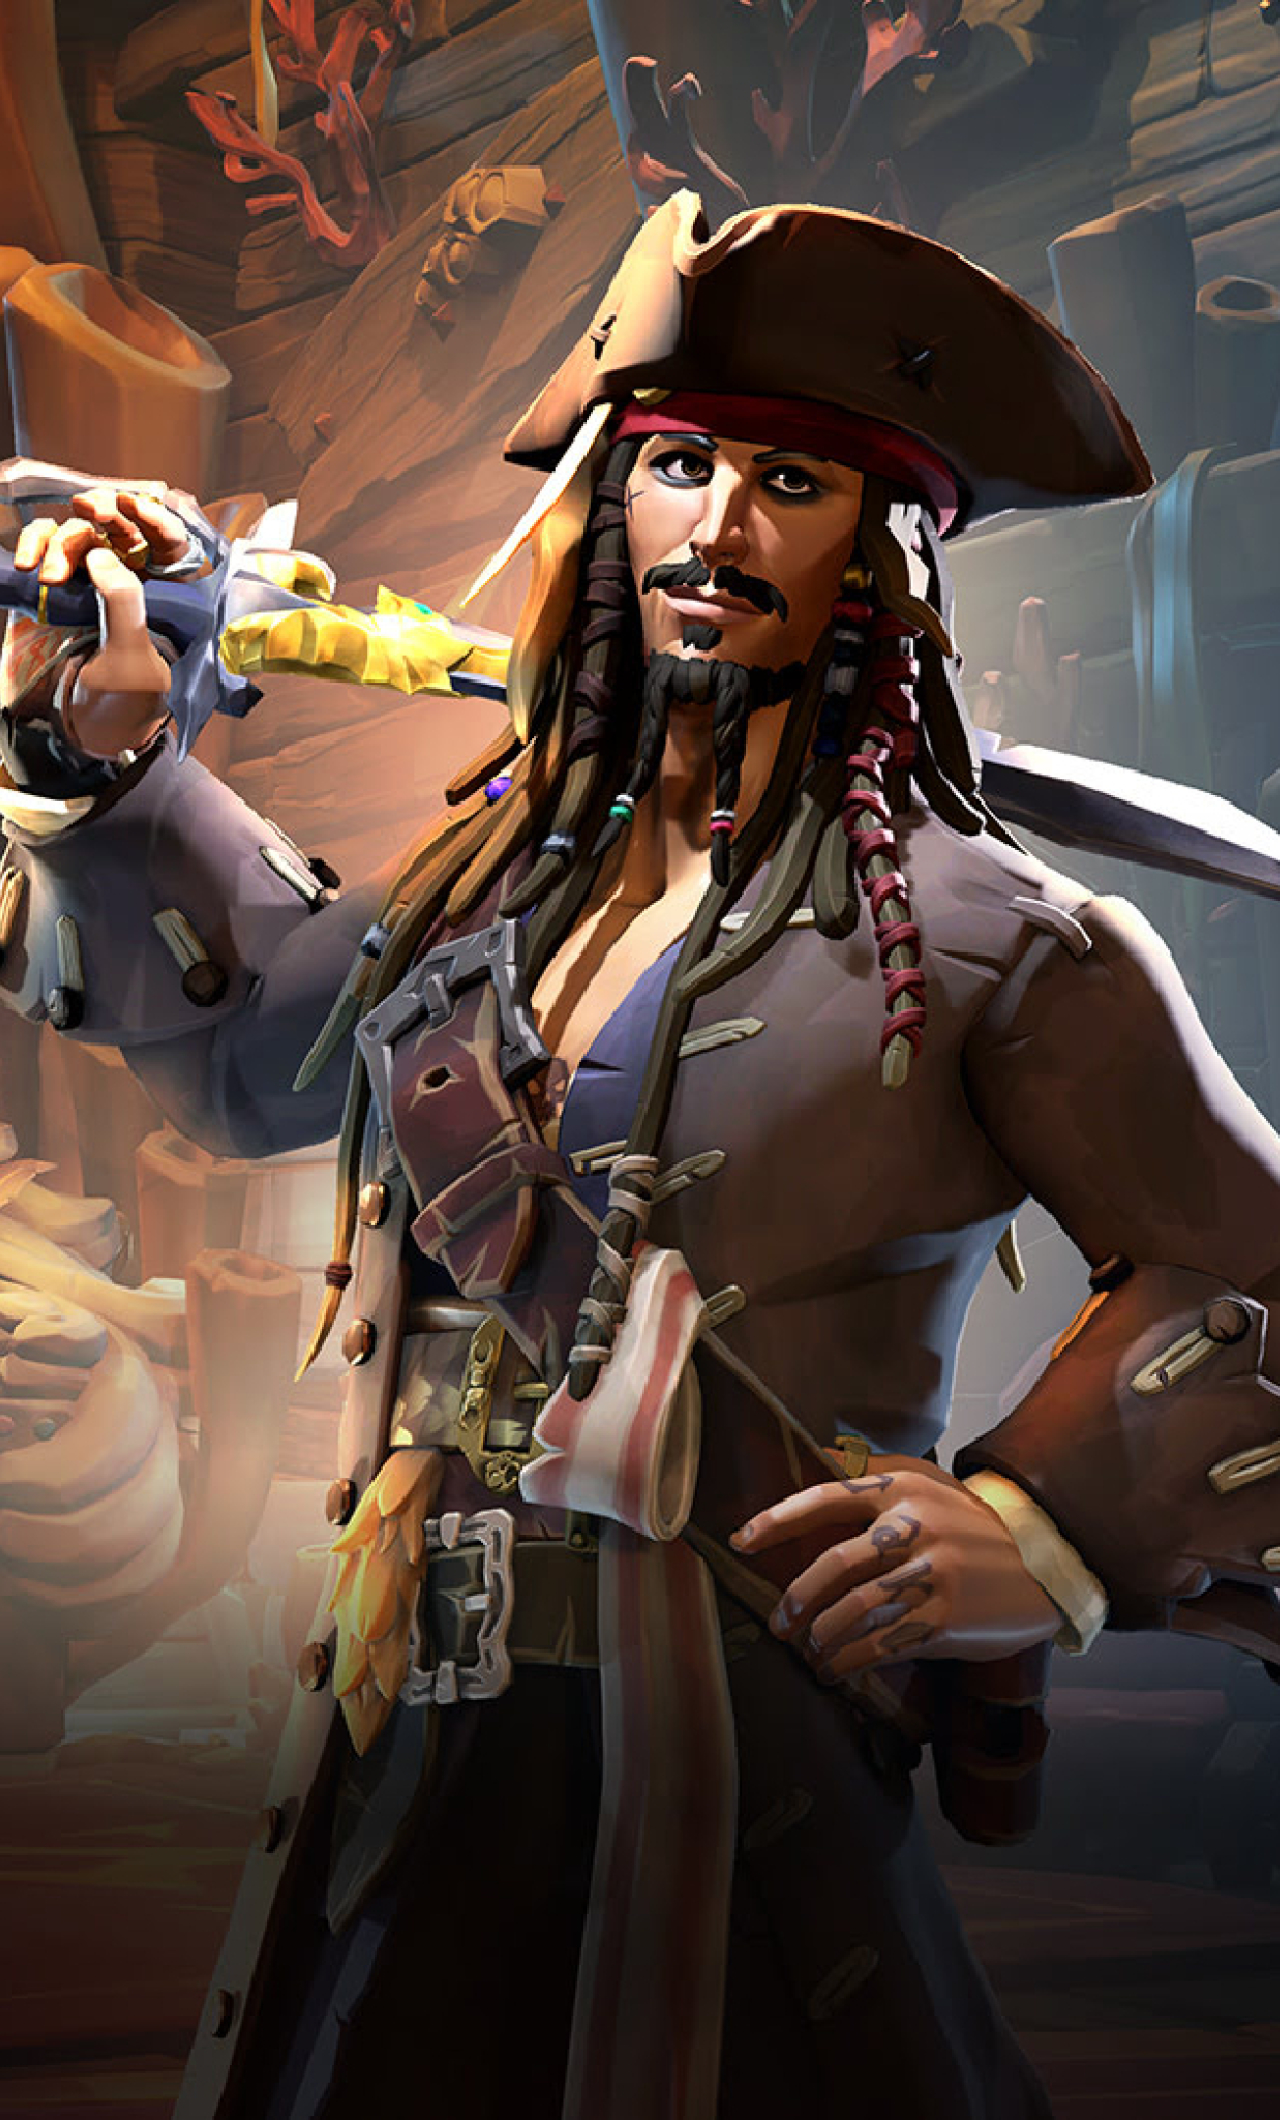 Jack Sparrow wallpaper by IIsJackSparrow  Download on ZEDGE  b023